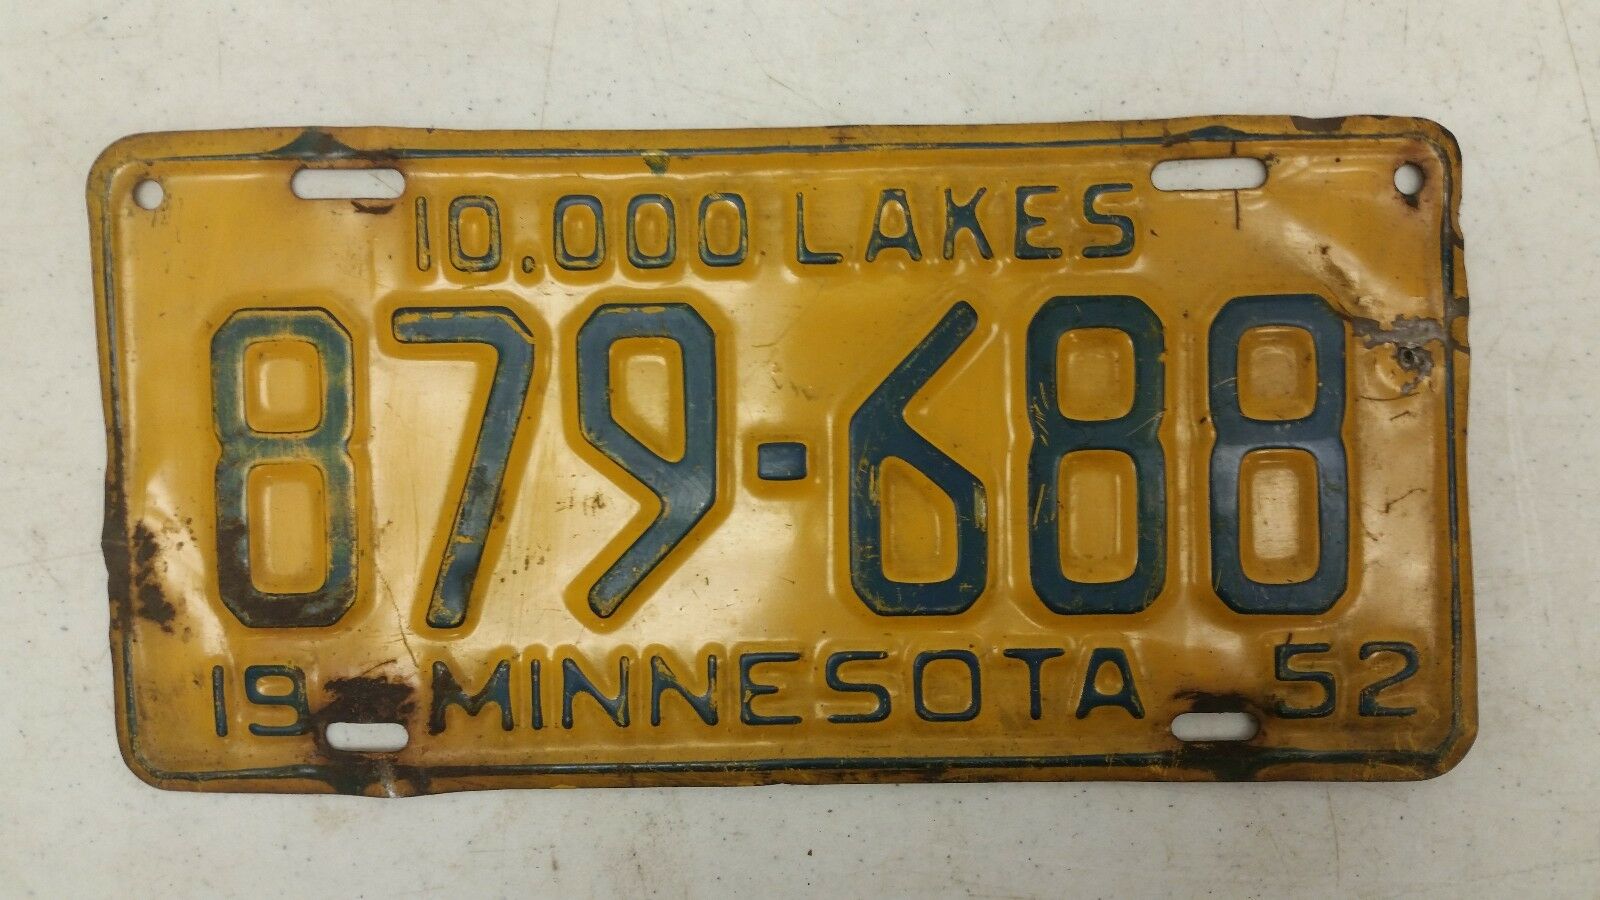 1952 Minnesota 10,000 Lakes License Plate 879-688